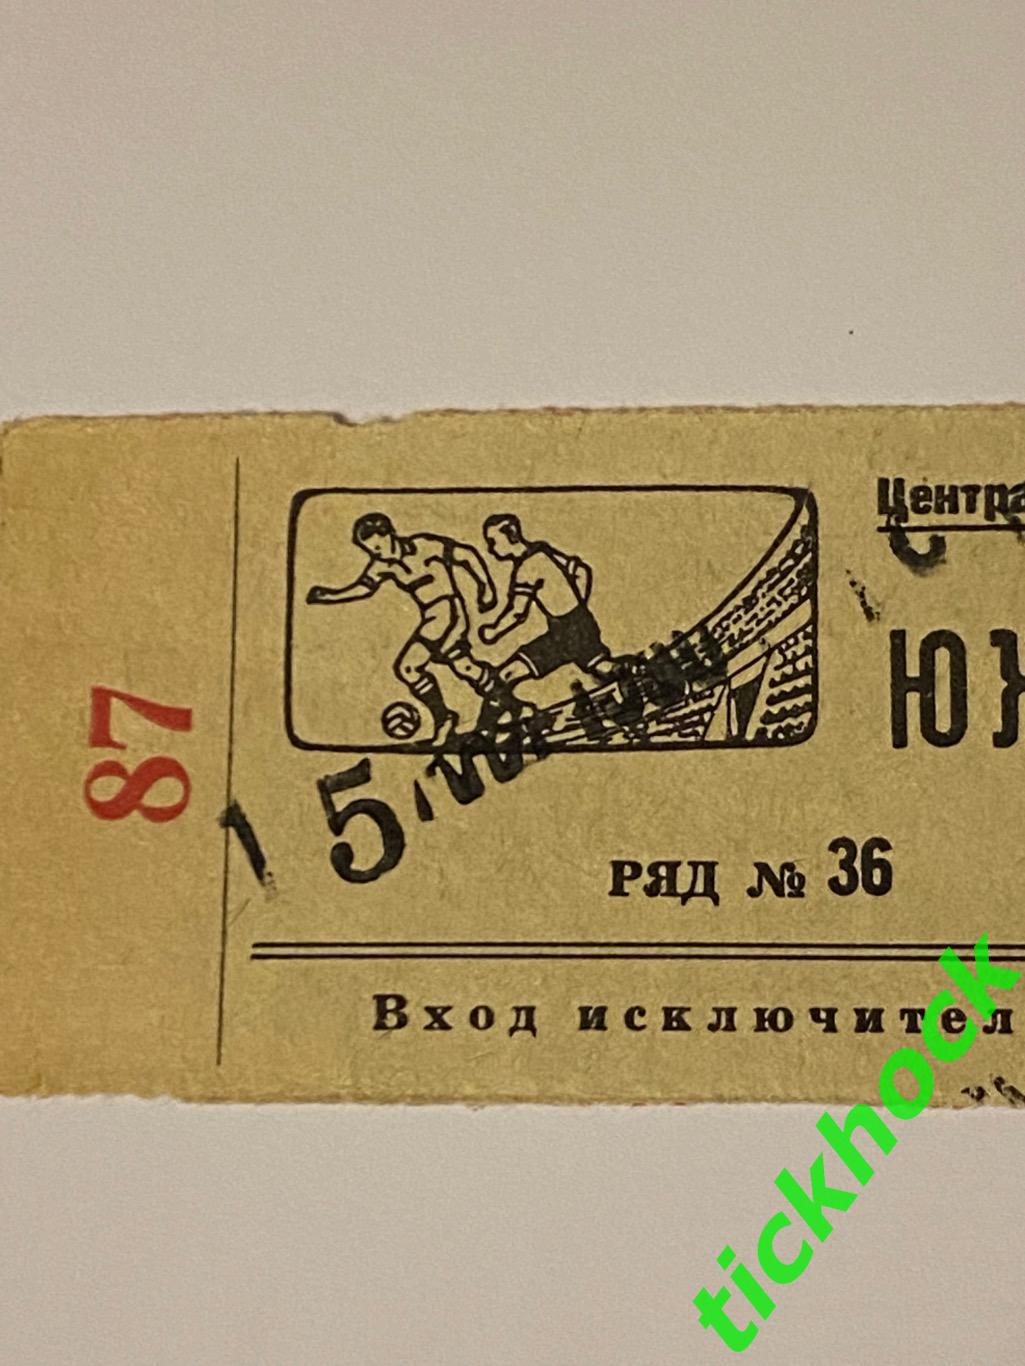 ВВС - Динамо Тбилиси 15 мая 1950 Чемпионат СССР --билет - Южная трибуна 1